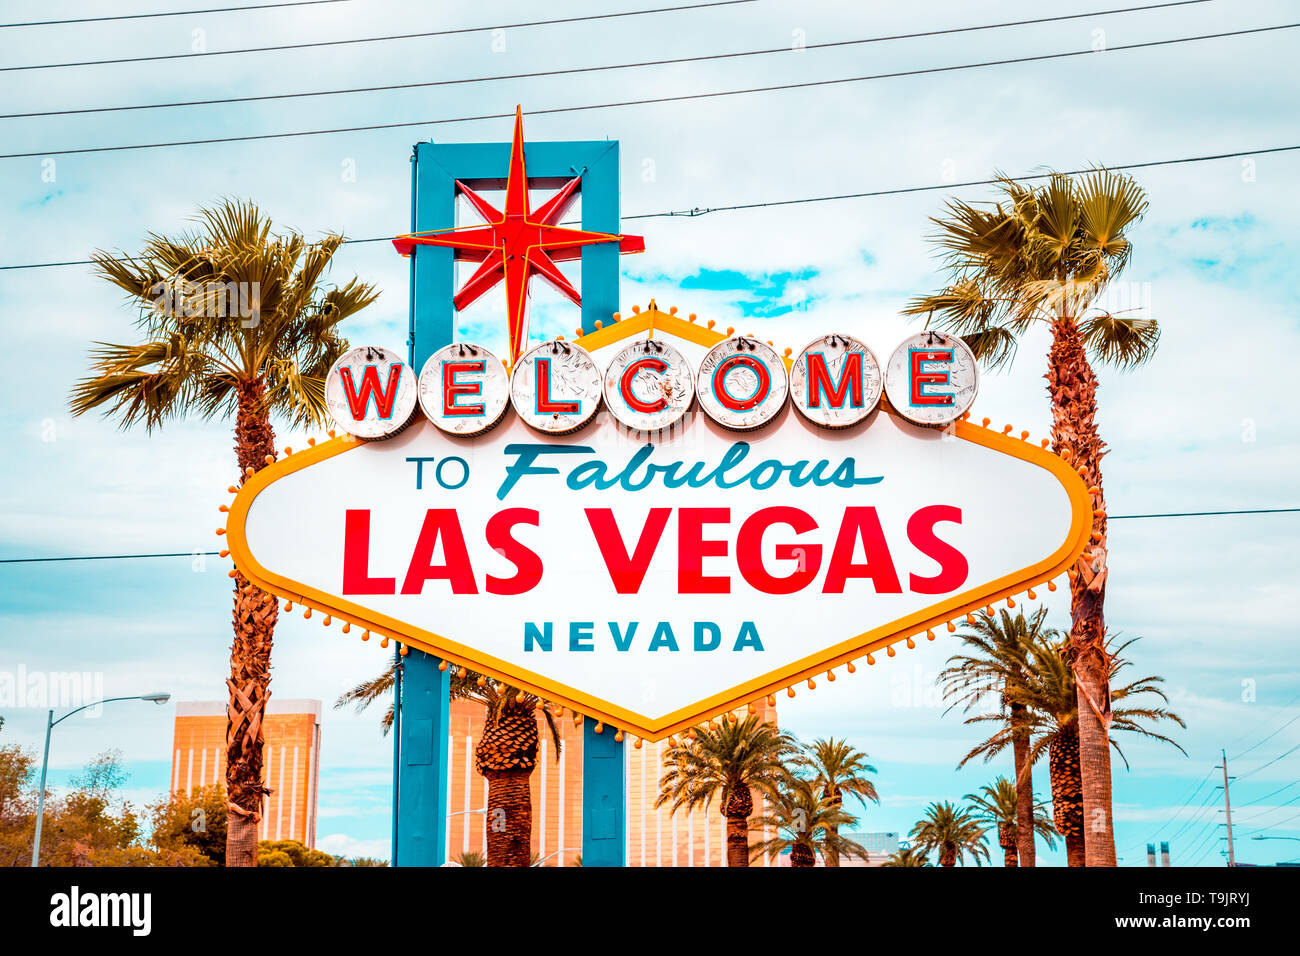 L'affichage classique de panneau Welcome to Fabulous Las Vegas à l'extrémité sud de la célèbre Strip de Las Vegas sur une belle journée ensoleillée avec ciel bleu et nuages Banque D'Images